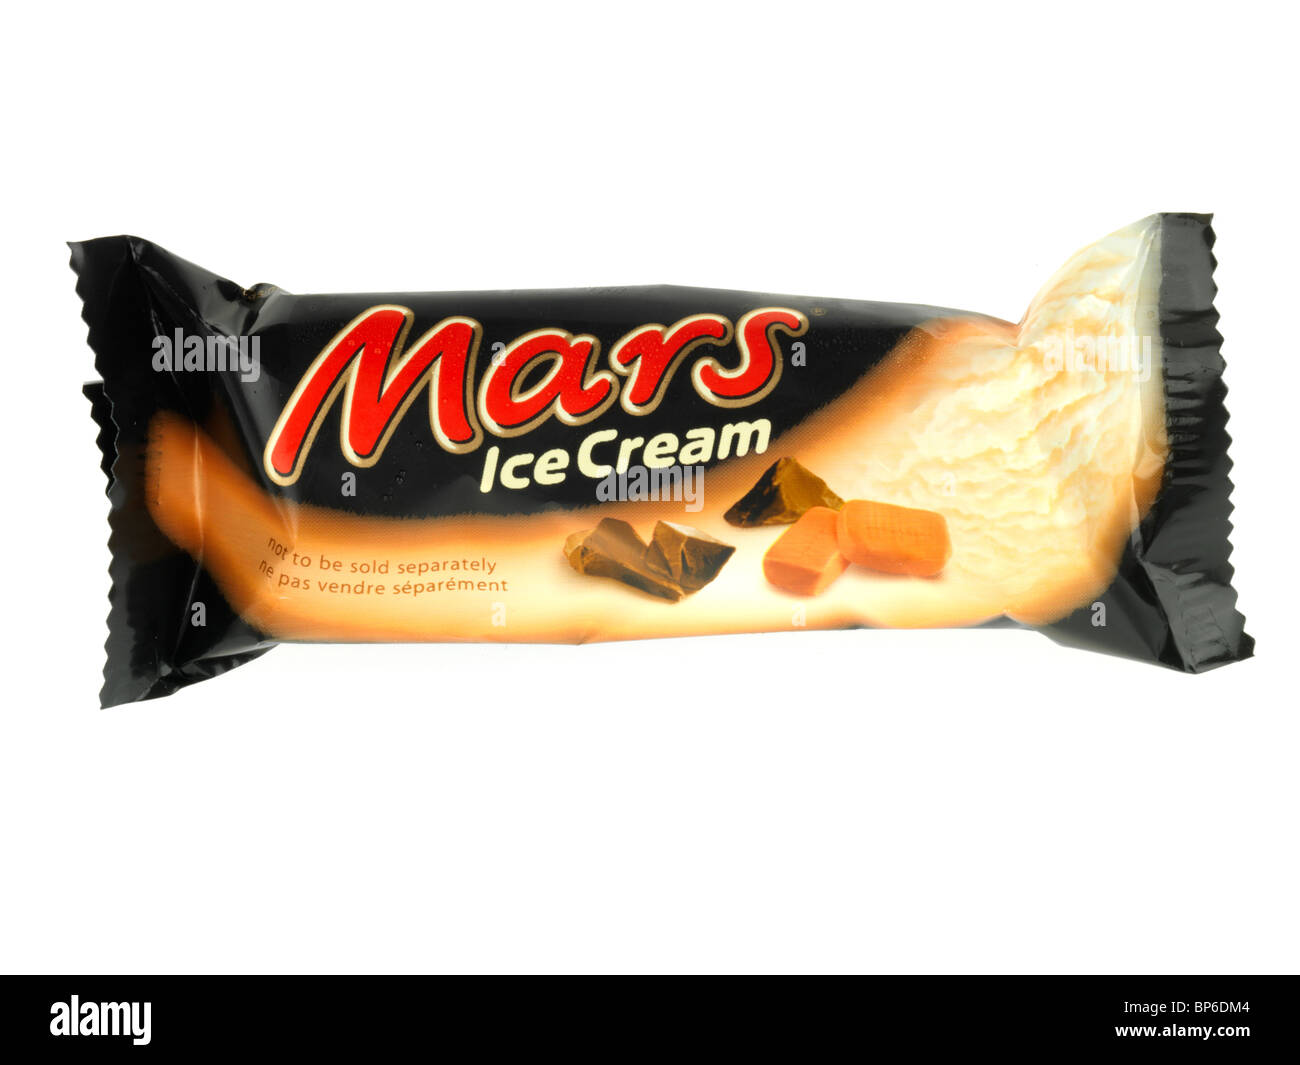 Mars Ice Cream Stock Photo